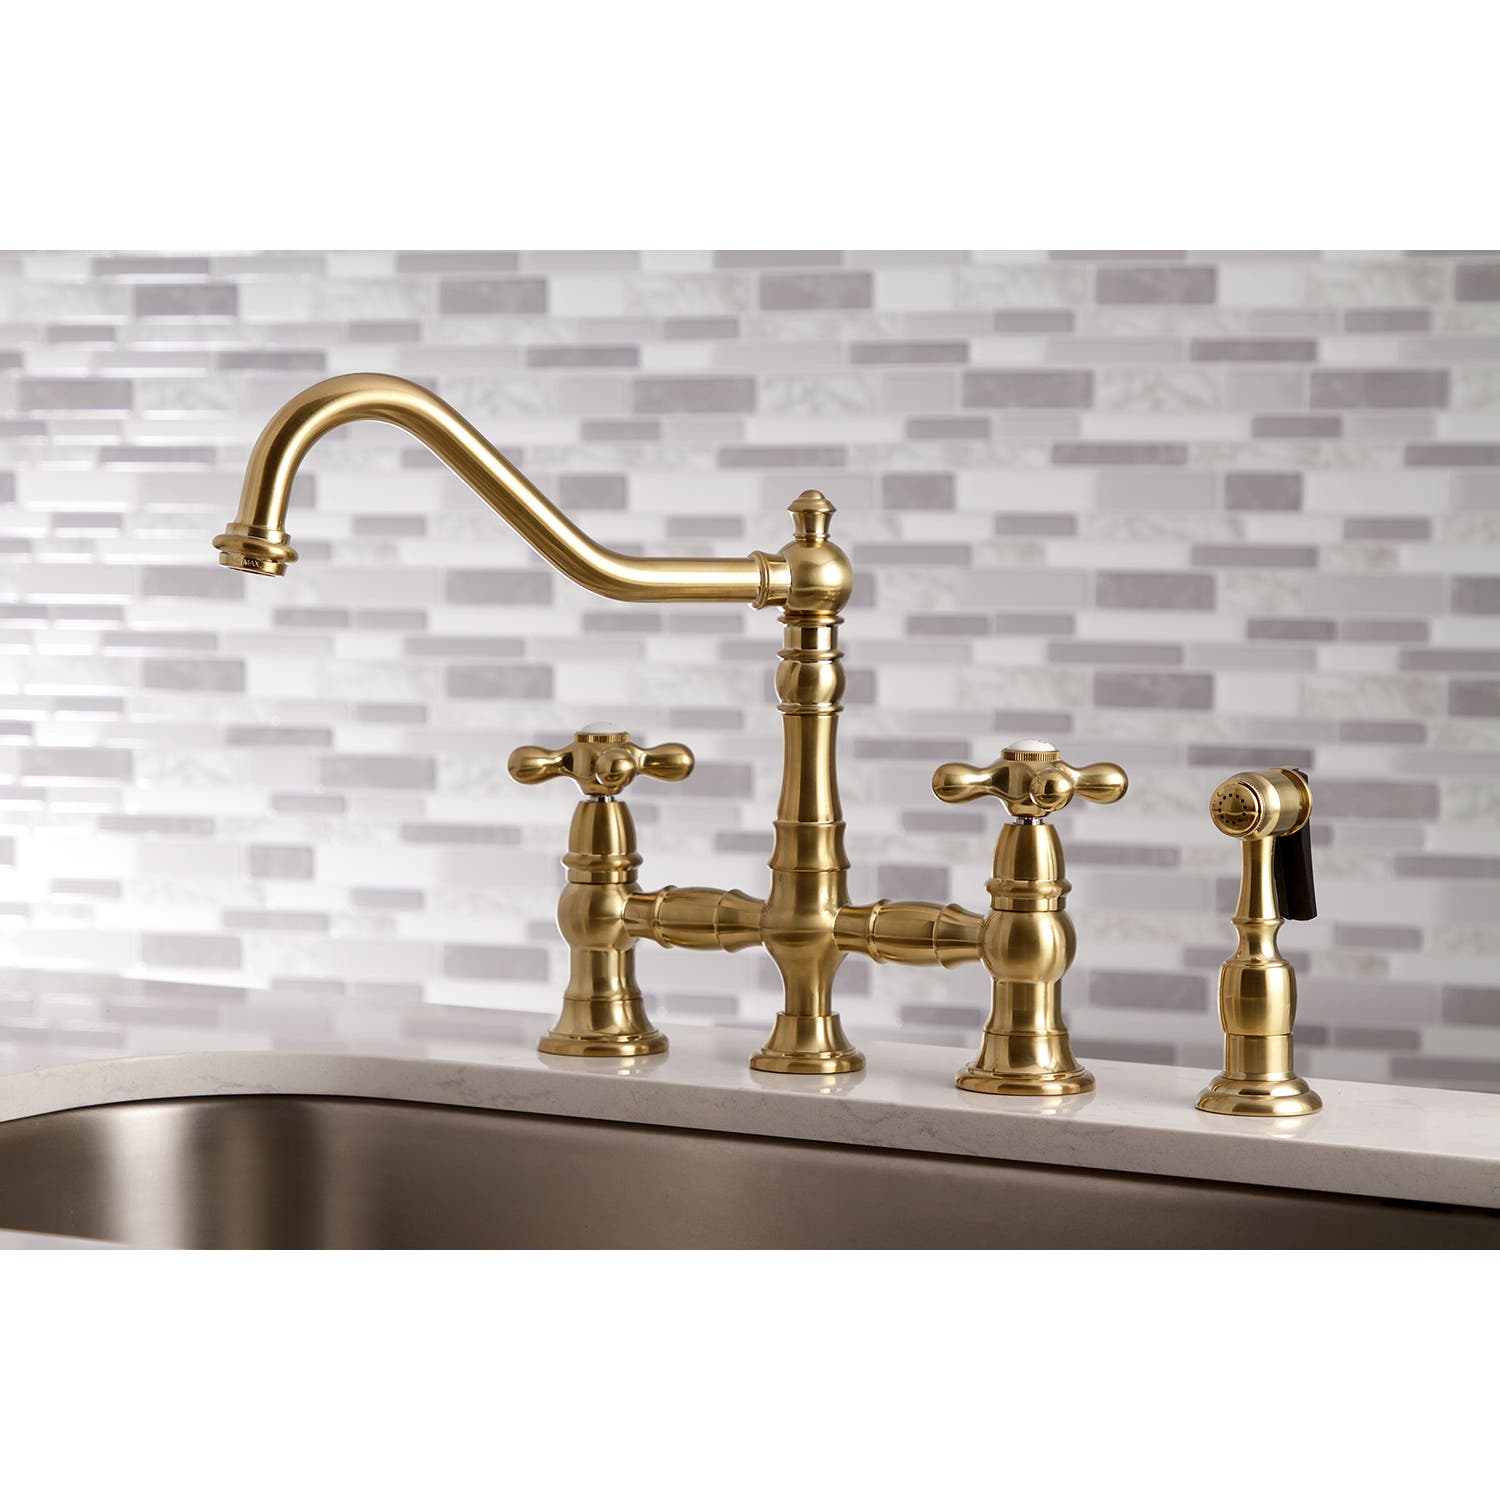 Satin Brass Bridge Kitchen Faucet Feature: KS3277AXBS